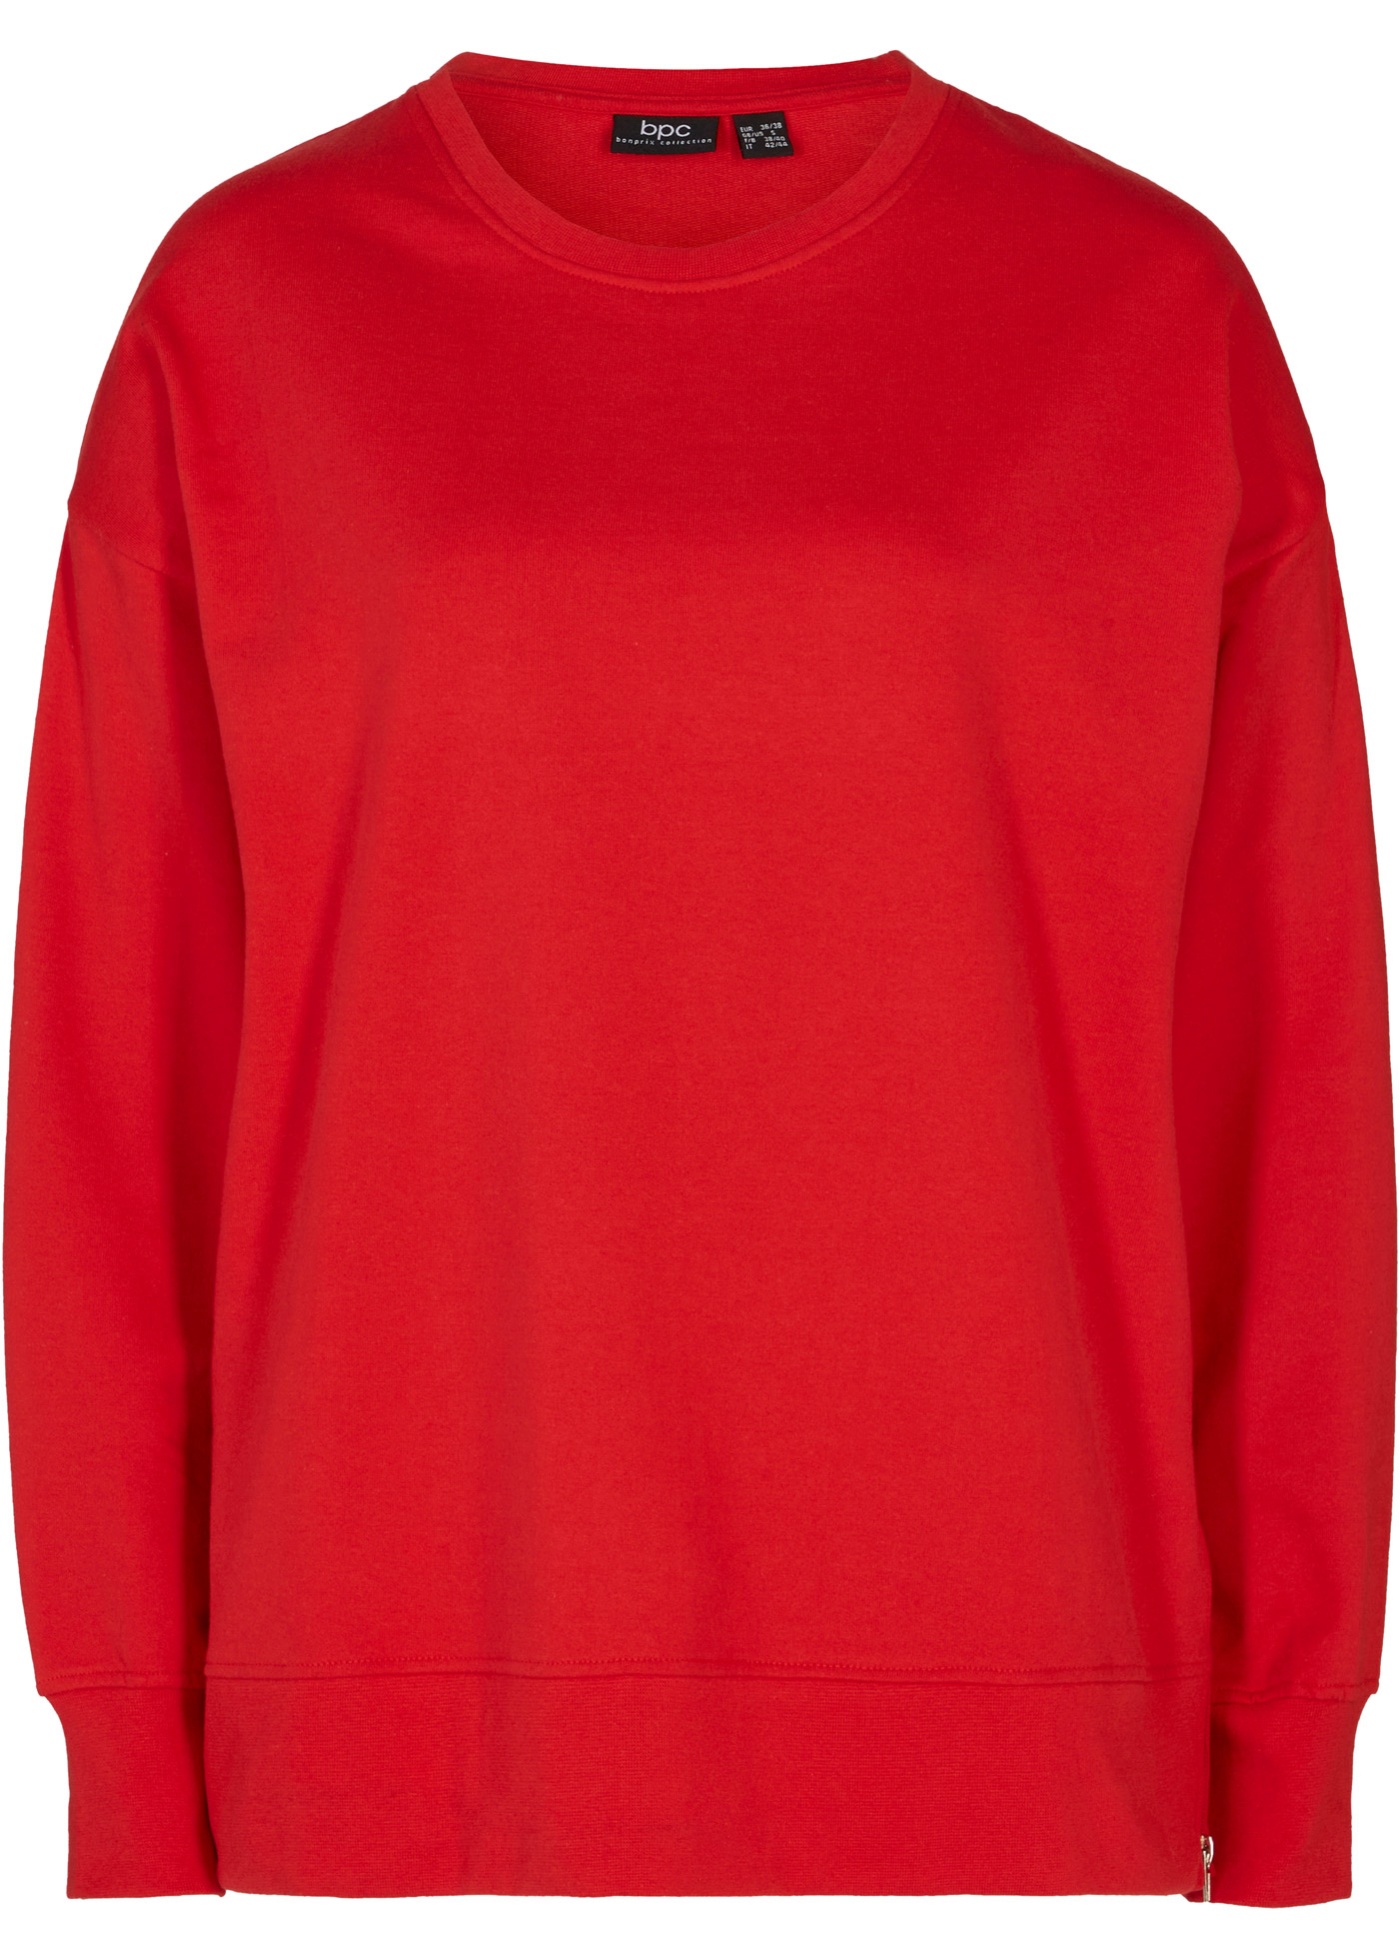 Bequemes Sweatshirt mit modischen Reißverschluss-Schlitzen an den Seiten. (96217695) in signalrot